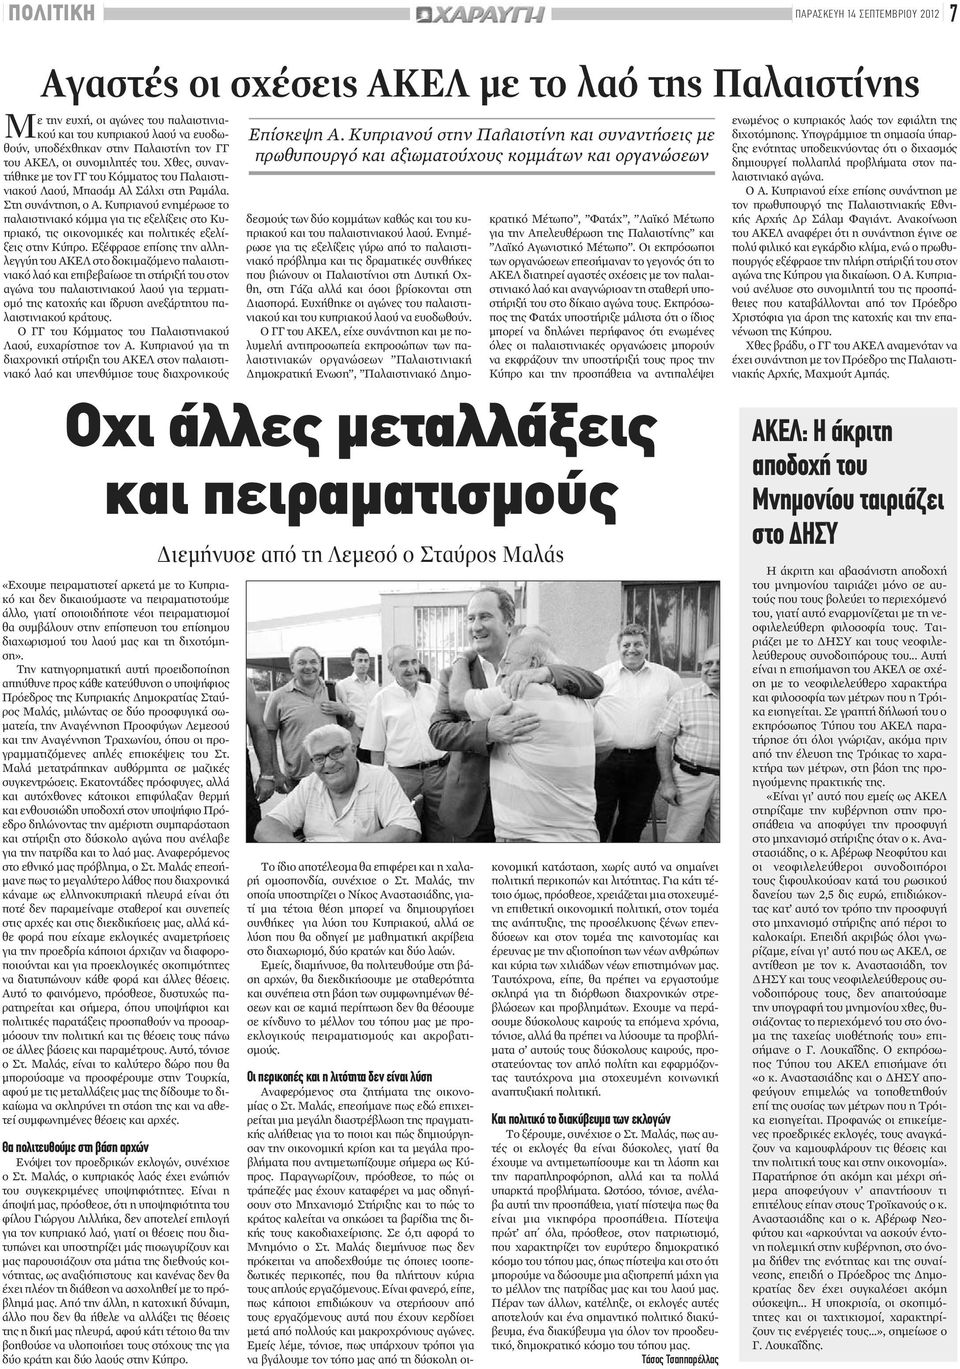 Κυπριανού ενημέρωσε το παλαιστινιακόκόμμα για τις εξελίξεις στο Κυπριακό, τις οικονομικές και πολιτικές εξελίξεις στην Κύπρο.